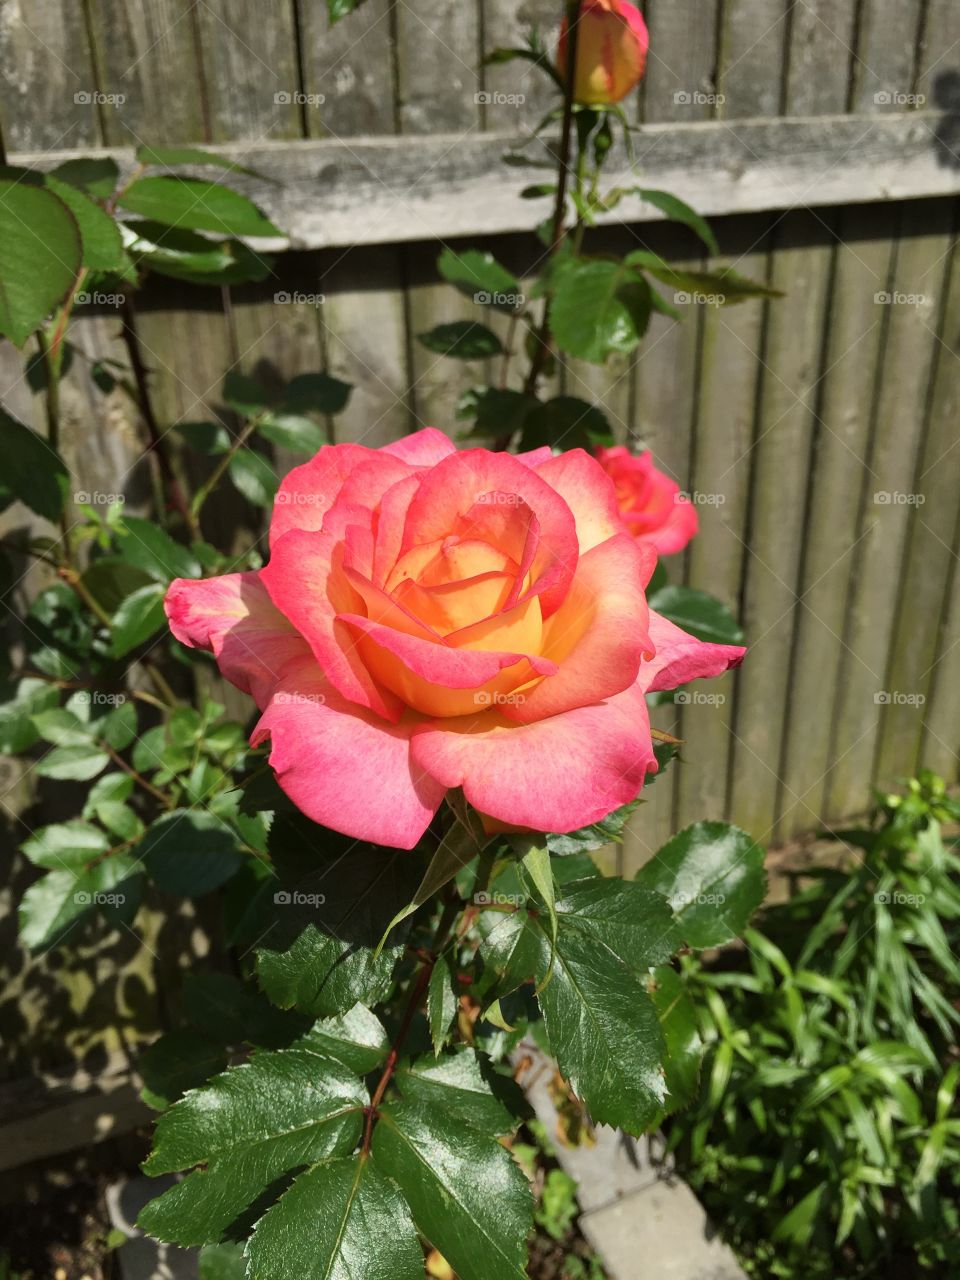 My beautiful "Peace" Rose bush! 